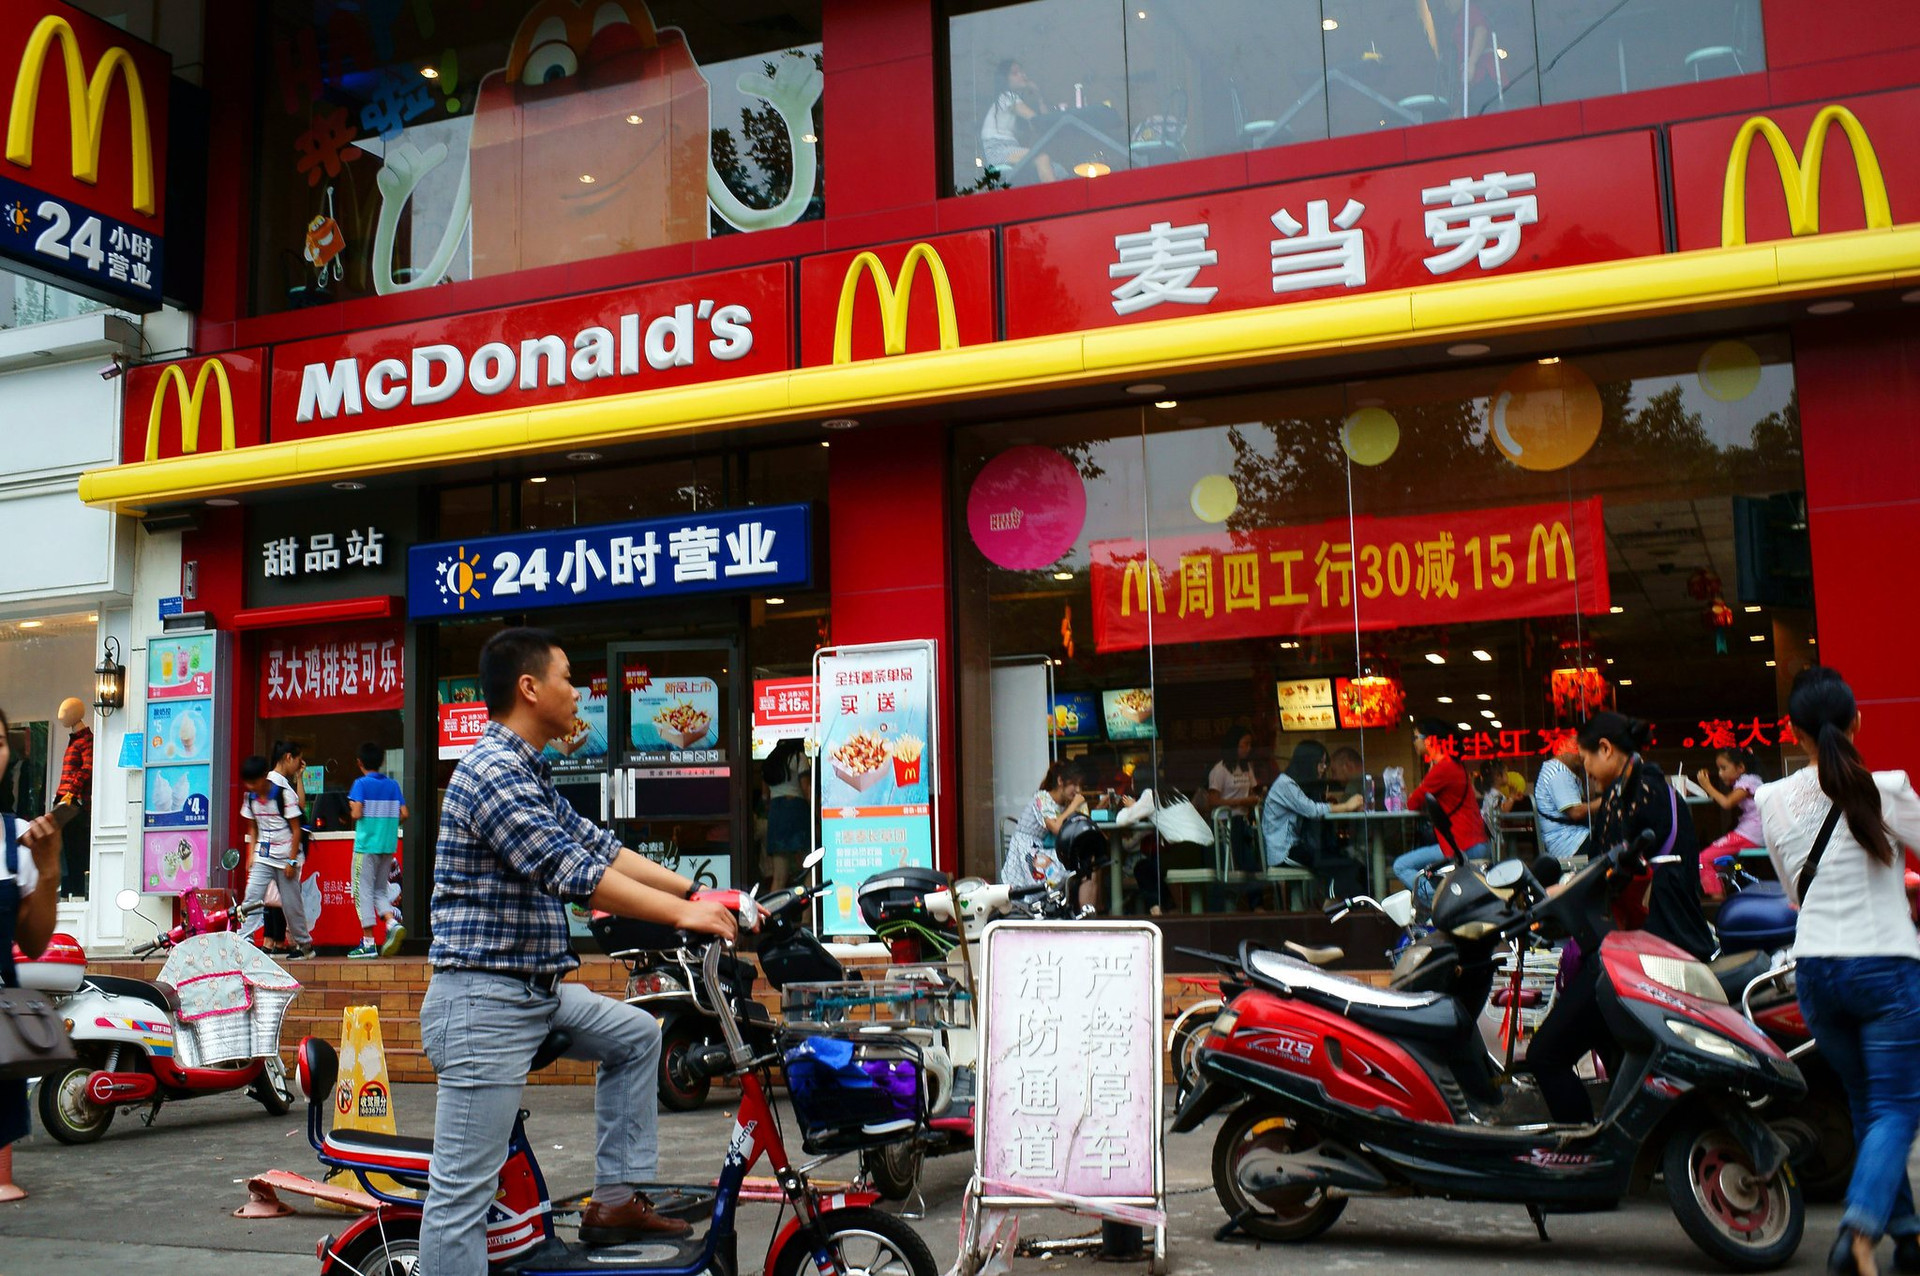 Làm mưa làm gió trên thế giới nhưng thất bại tại Việt Nam: McDolnald's ngừng bán Burger vì không thể cạnh tranh nổi với bánh mì? - Ảnh 2.